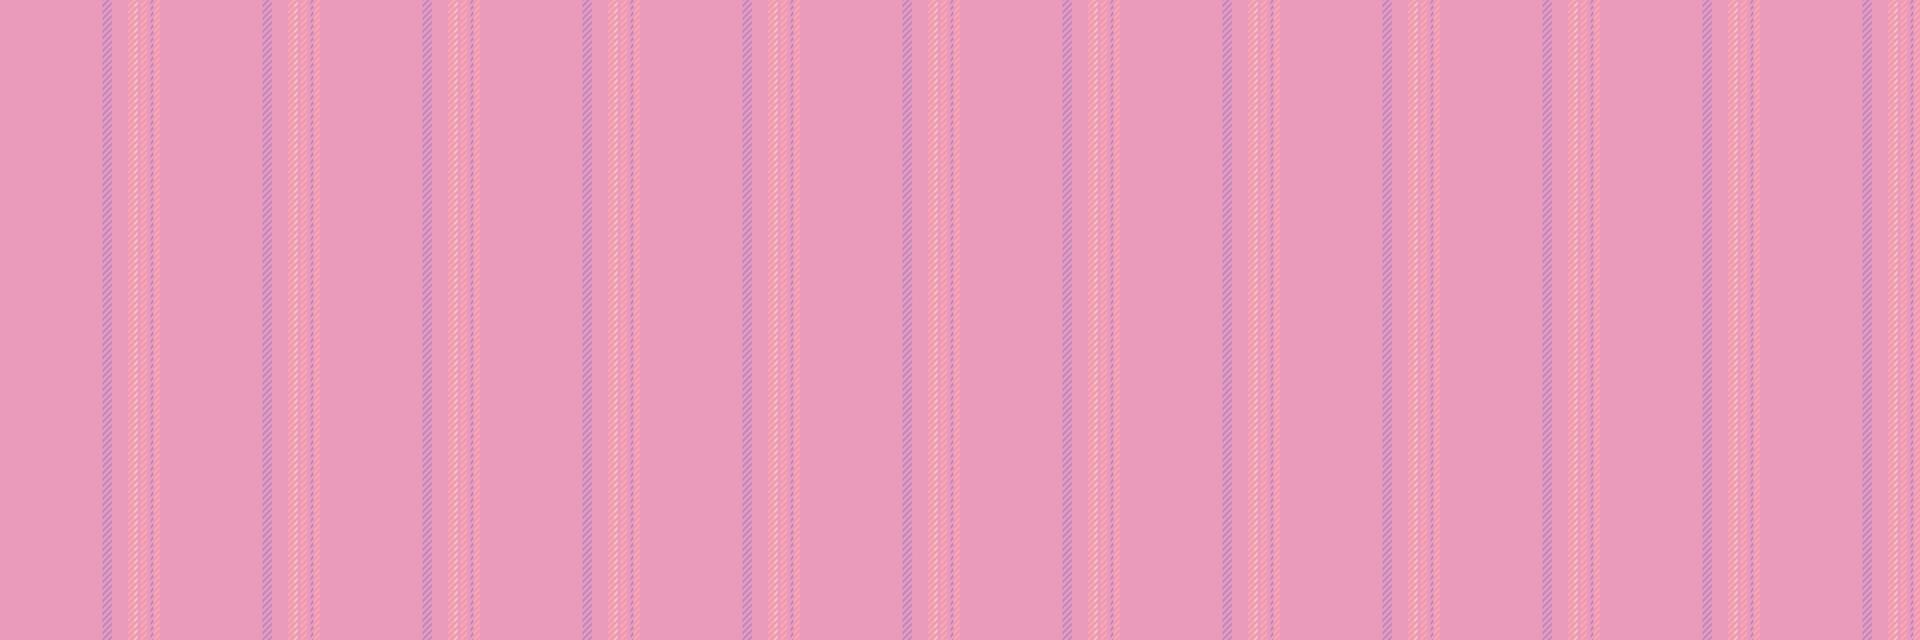 Fantasie Linien Stoff Hintergrund, Decke Streifen Muster Vektor. Hipster Textil- nahtlos Vertikale Textur im Rosa und rot Farben. vektor